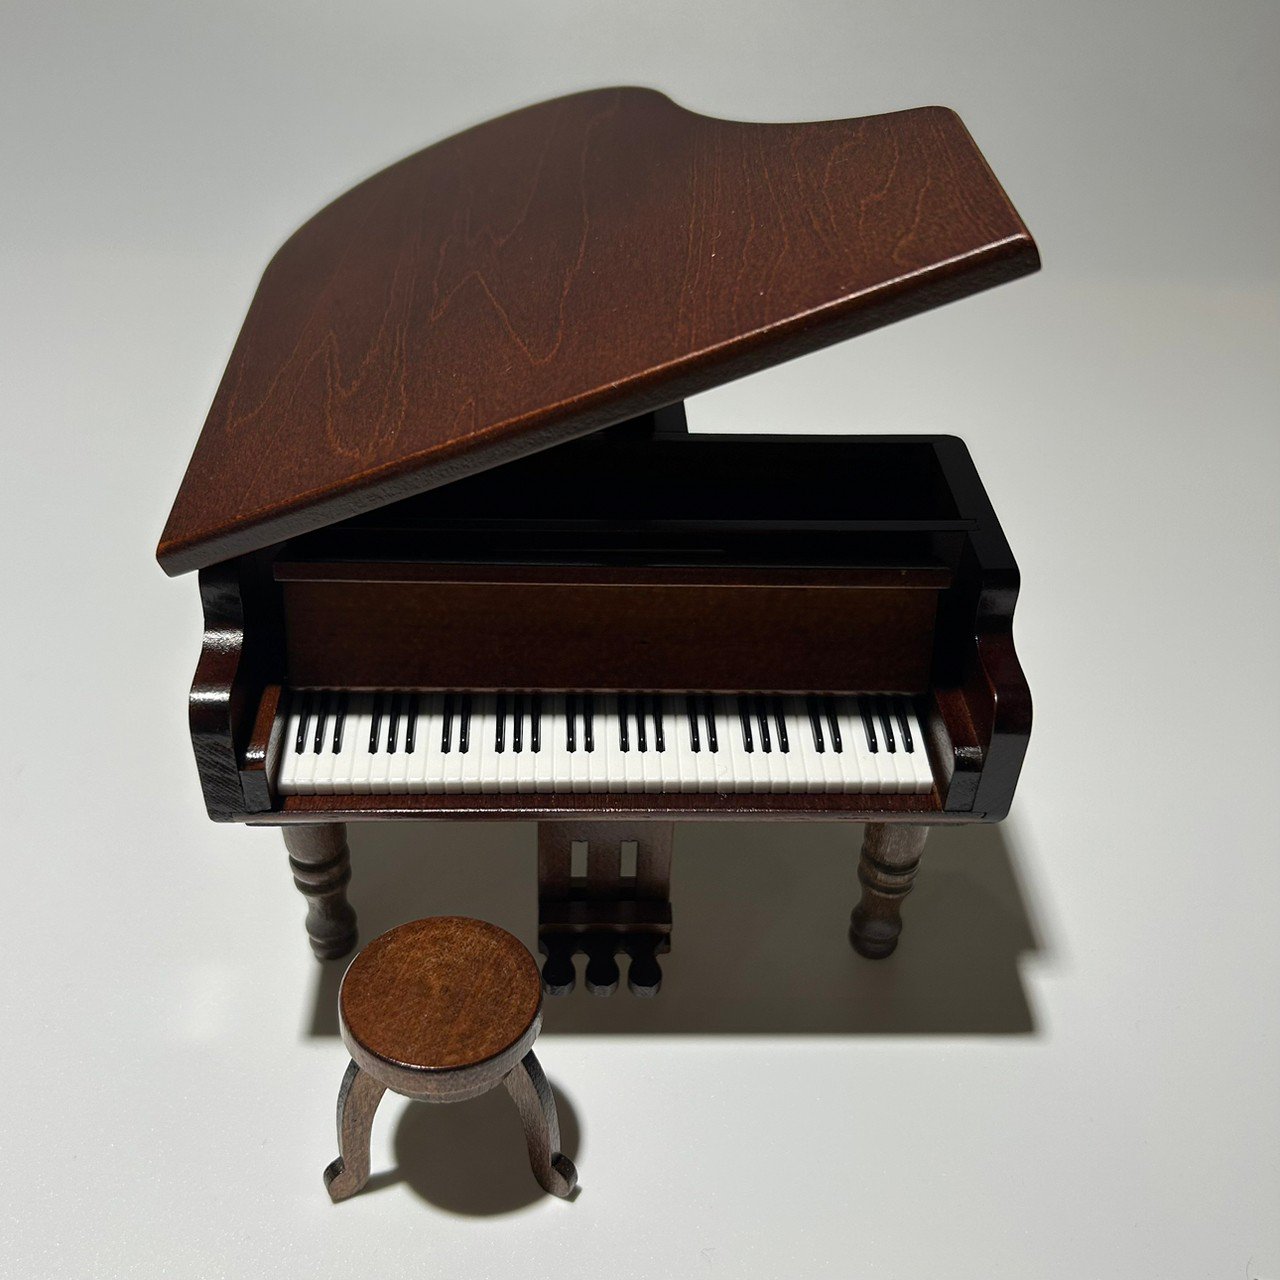 グランドピアノ型オルゴール「カノン」【木製ミニチュアオルゴール 